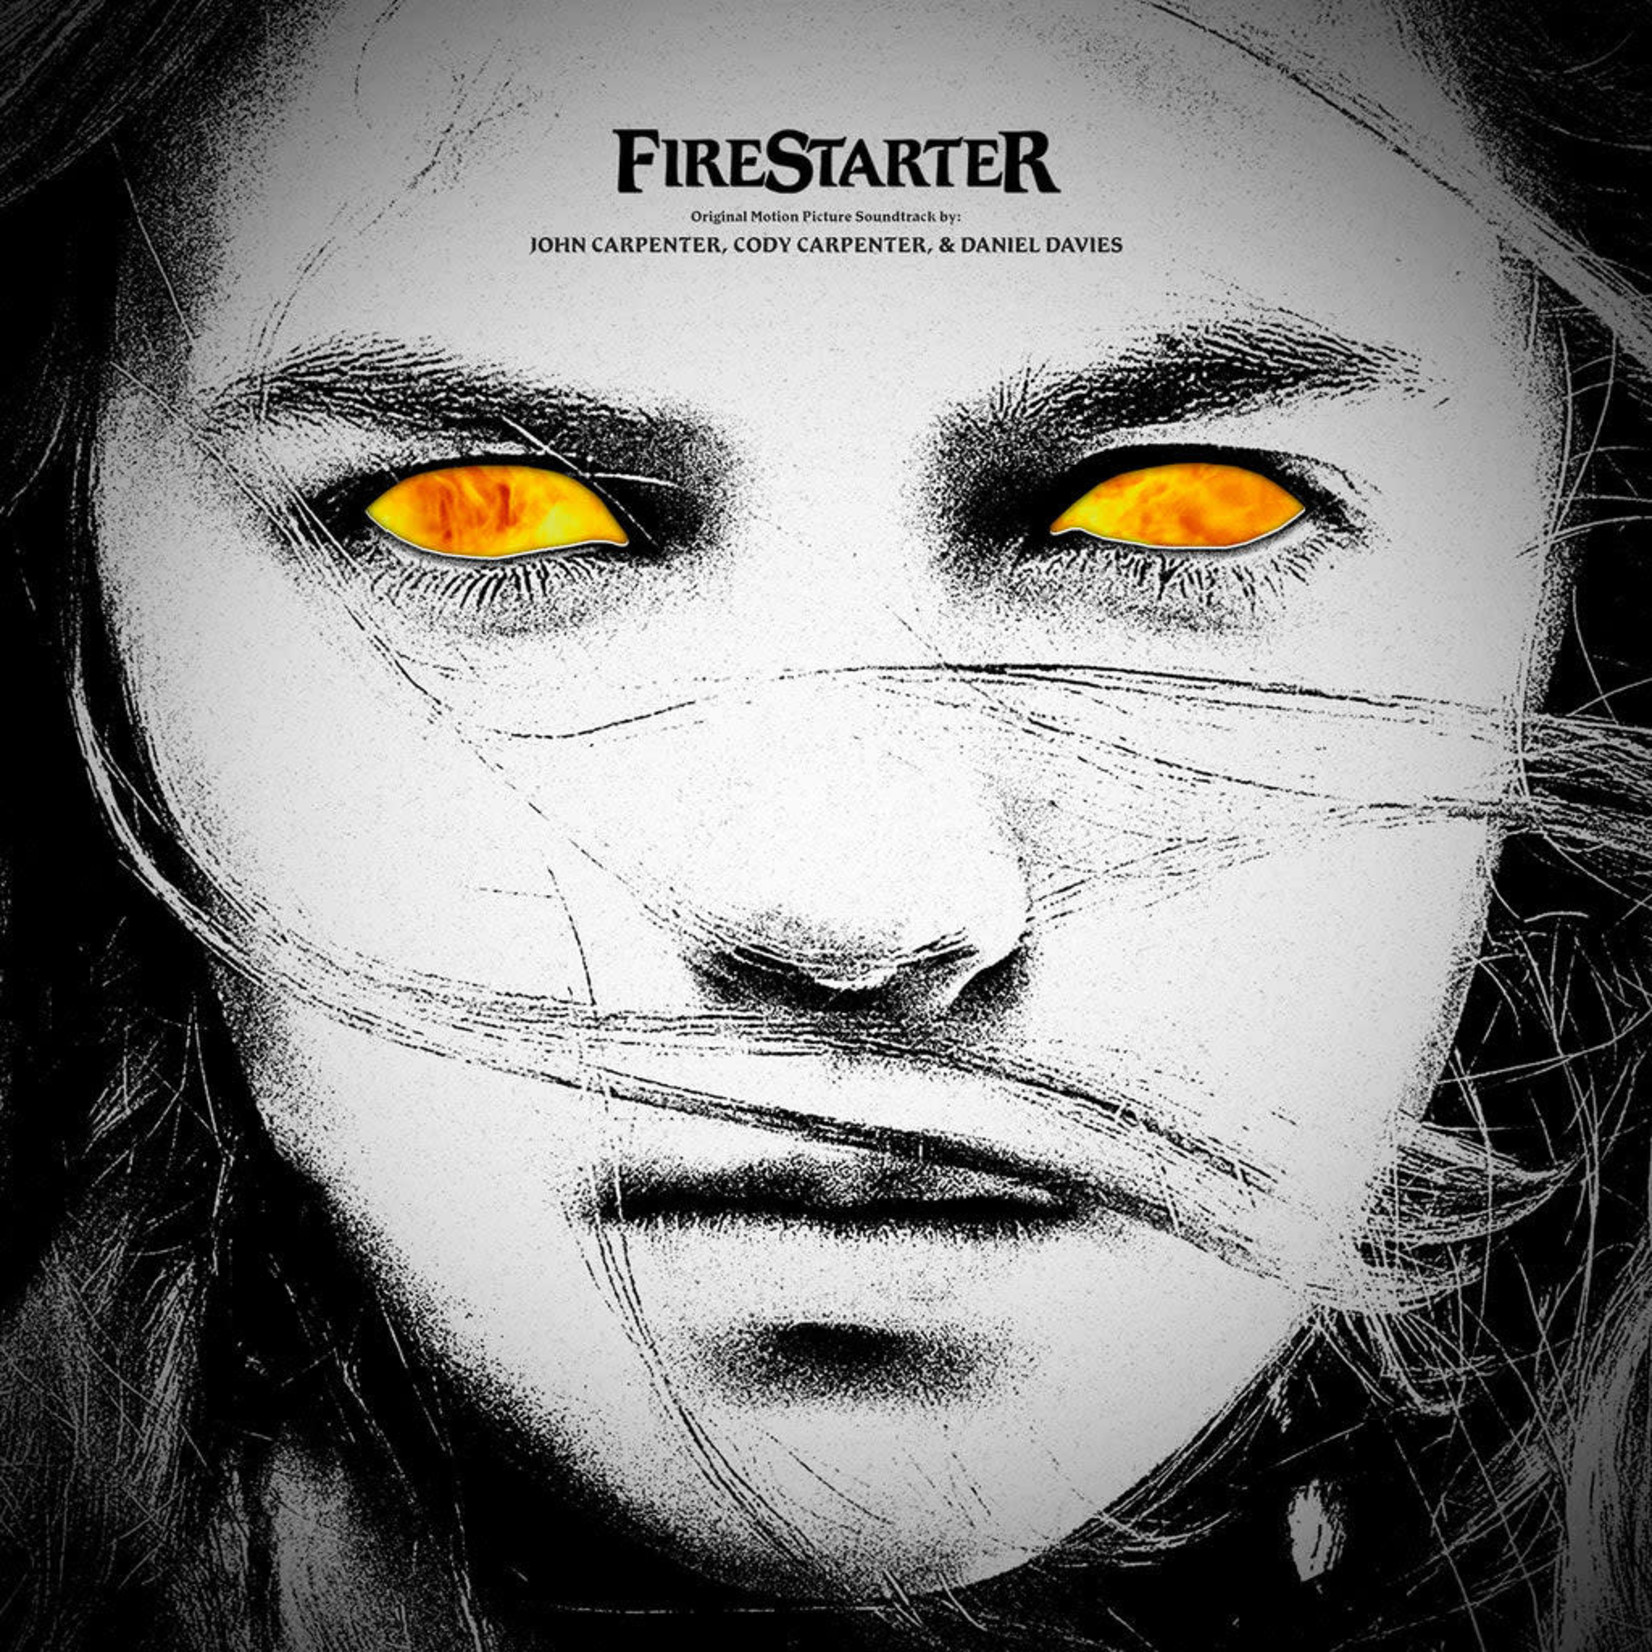 [New] John Carpenter, Cody Carpenter, Daniel Davies - Firestarter (soundtrack, yellow & bone splatter vinyl)